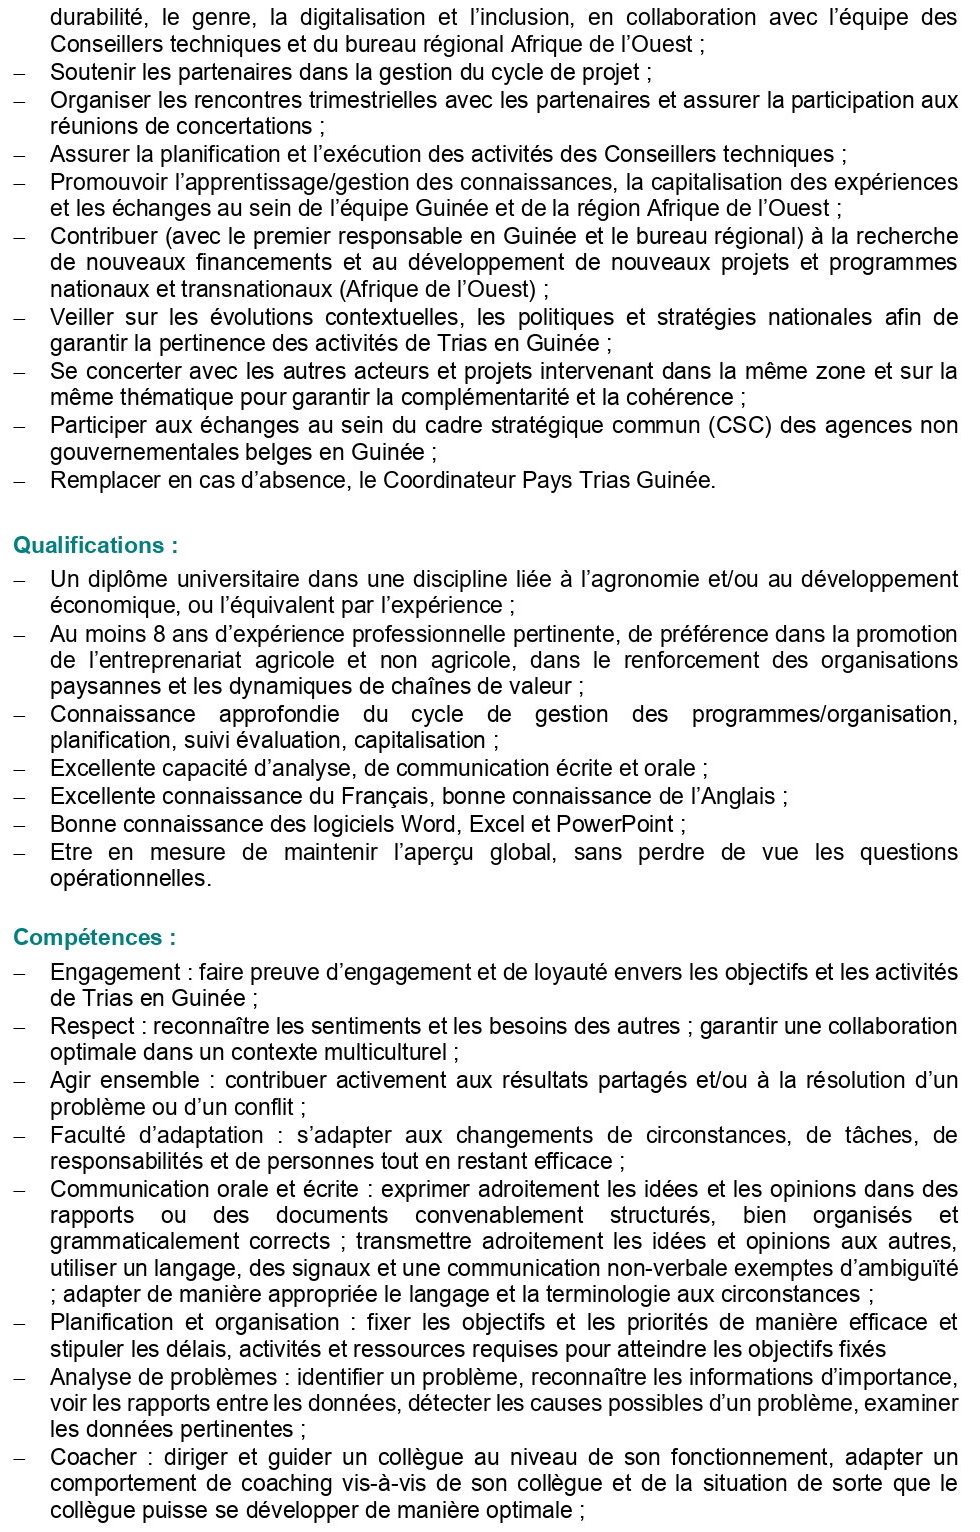 Avis de recrutement Chargé/e des Programmes Guinée | page 2